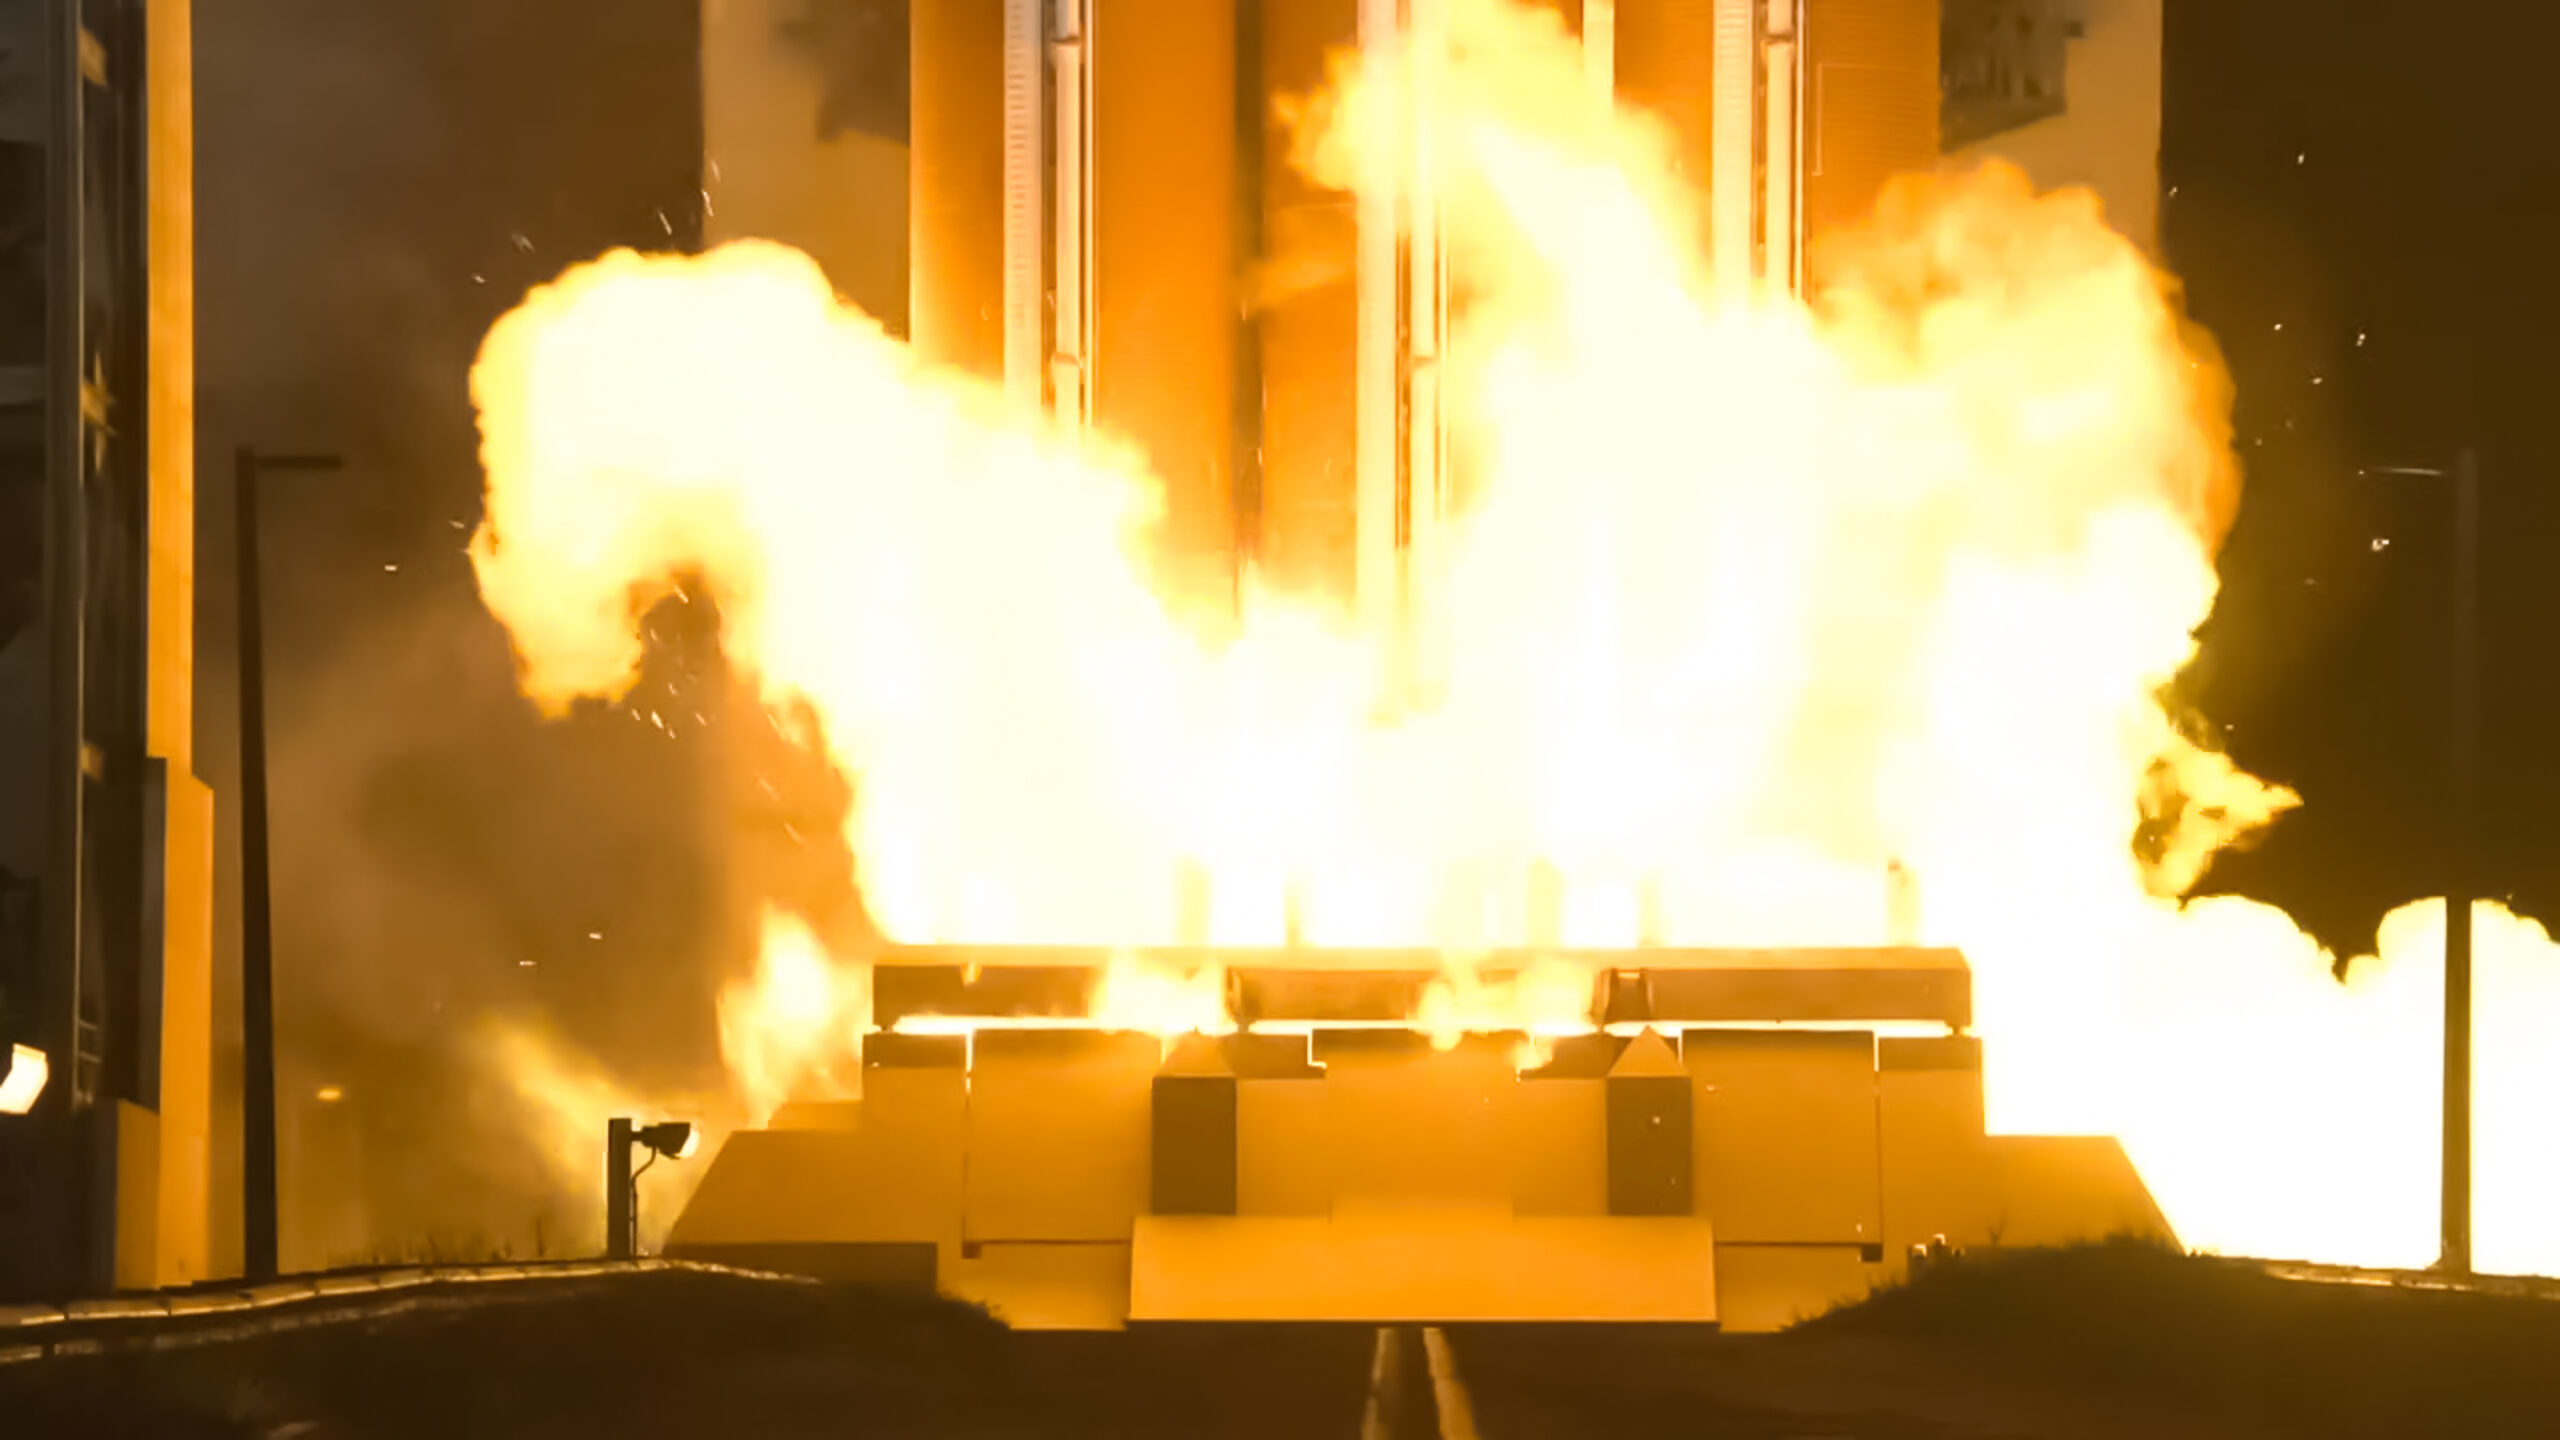 Fotografía que muestra el sistema de eliminación de exceso de hidrógeno incendiando la base del cohete cumpliendo su misión